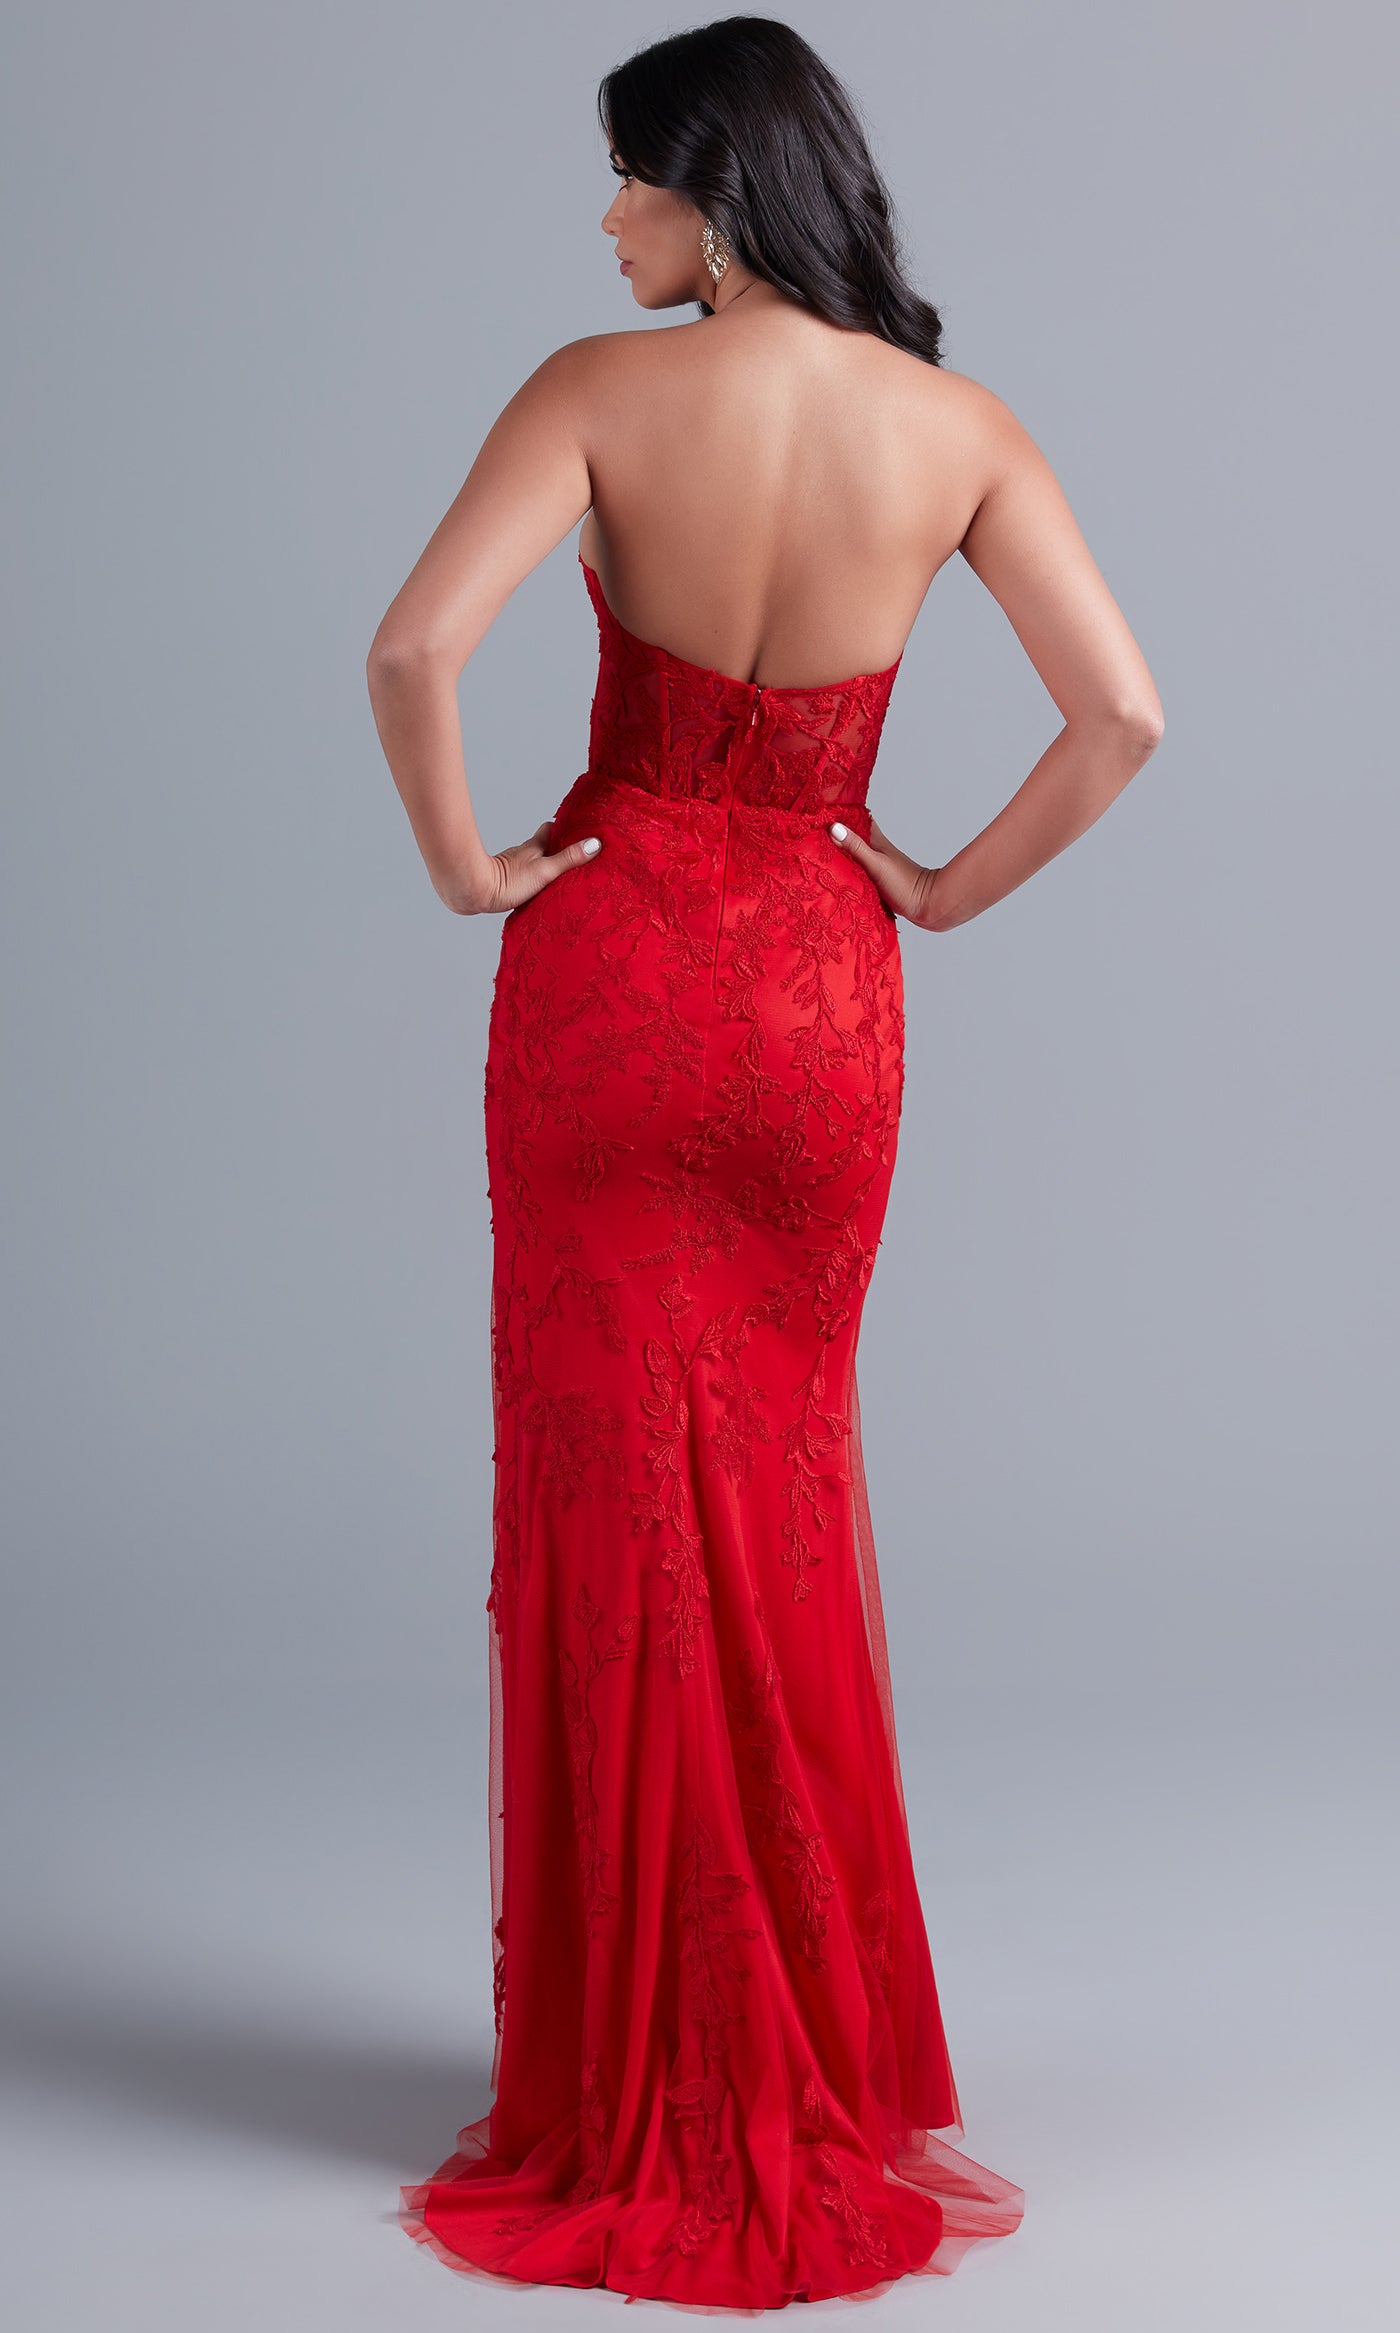  Sheer-Bodice Long Strapless Designer Prom Dress